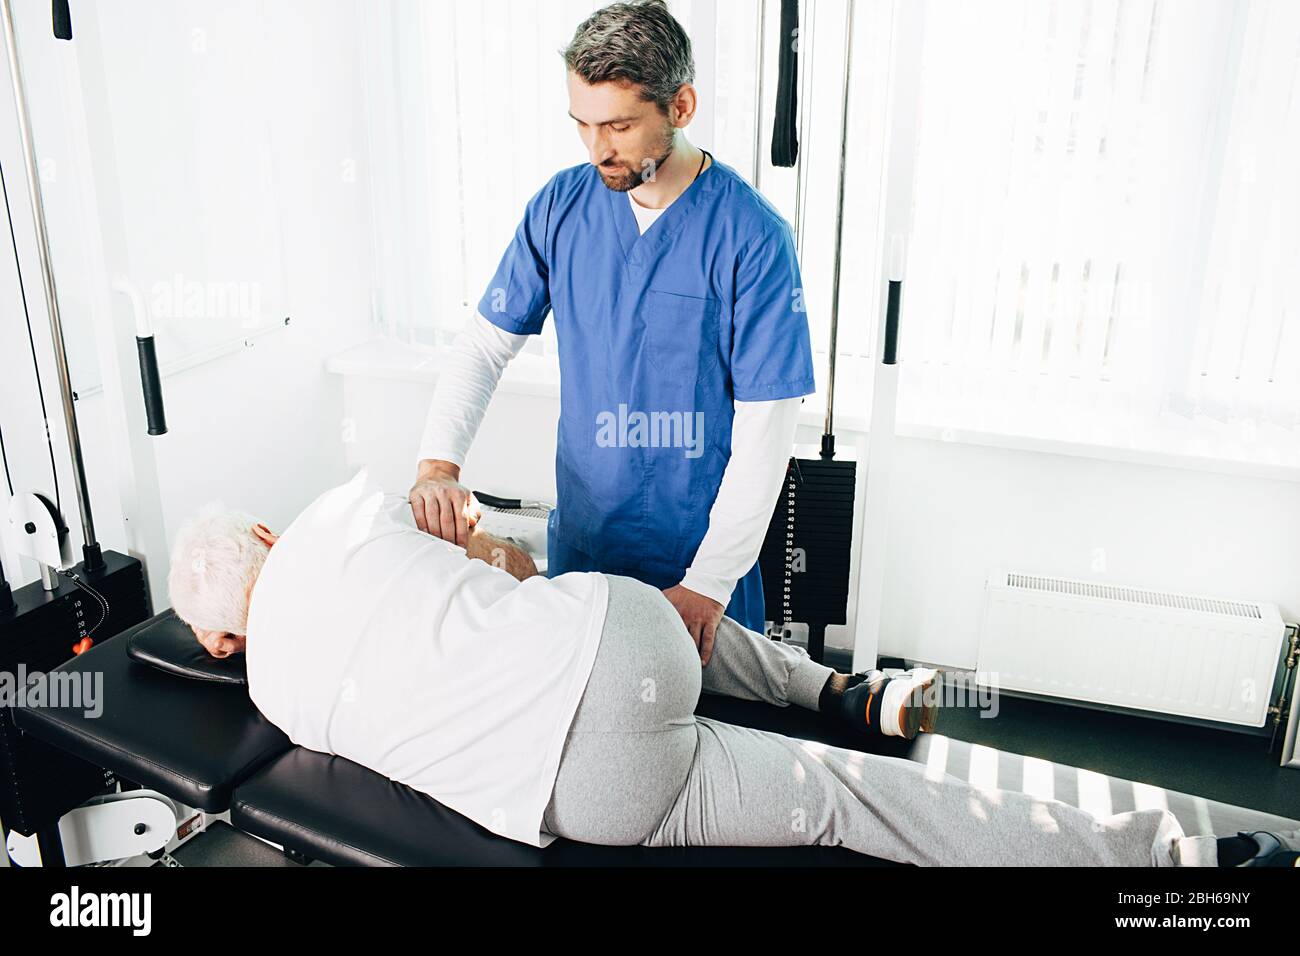 chiropraticien ajustement de la colonne vertébrale d'un homme senior au centre de réadaptation. Élimination de la douleur dorsale et traitement de la colonne vertébrale Banque D'Images